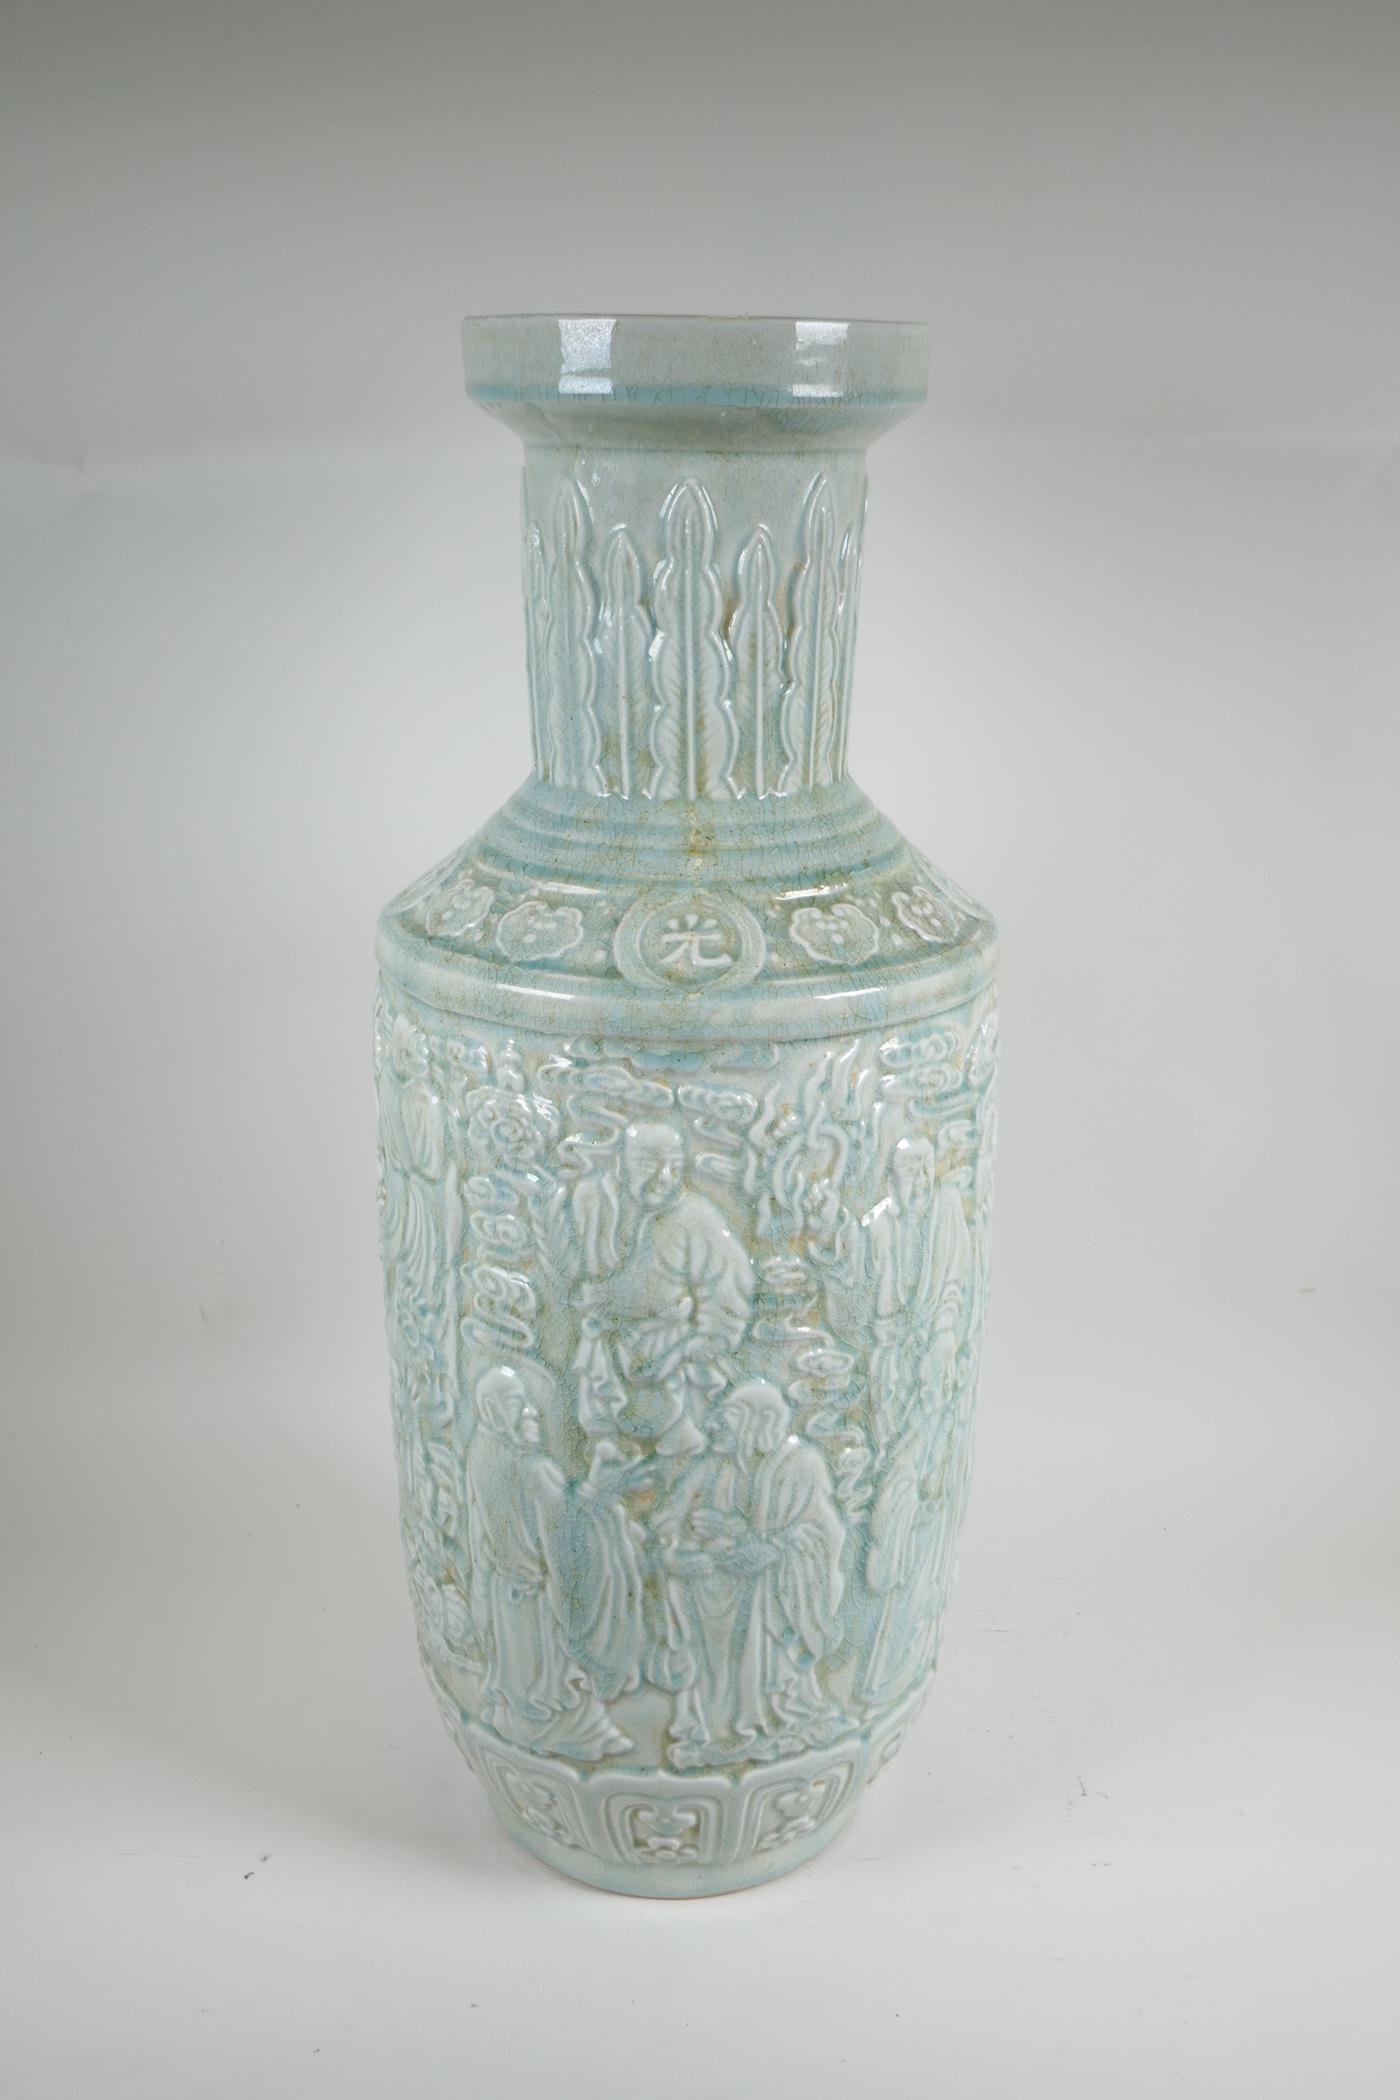 A Chinese celadon glazed ceramic vase, with raised decoration, 24" high - Image 2 of 5